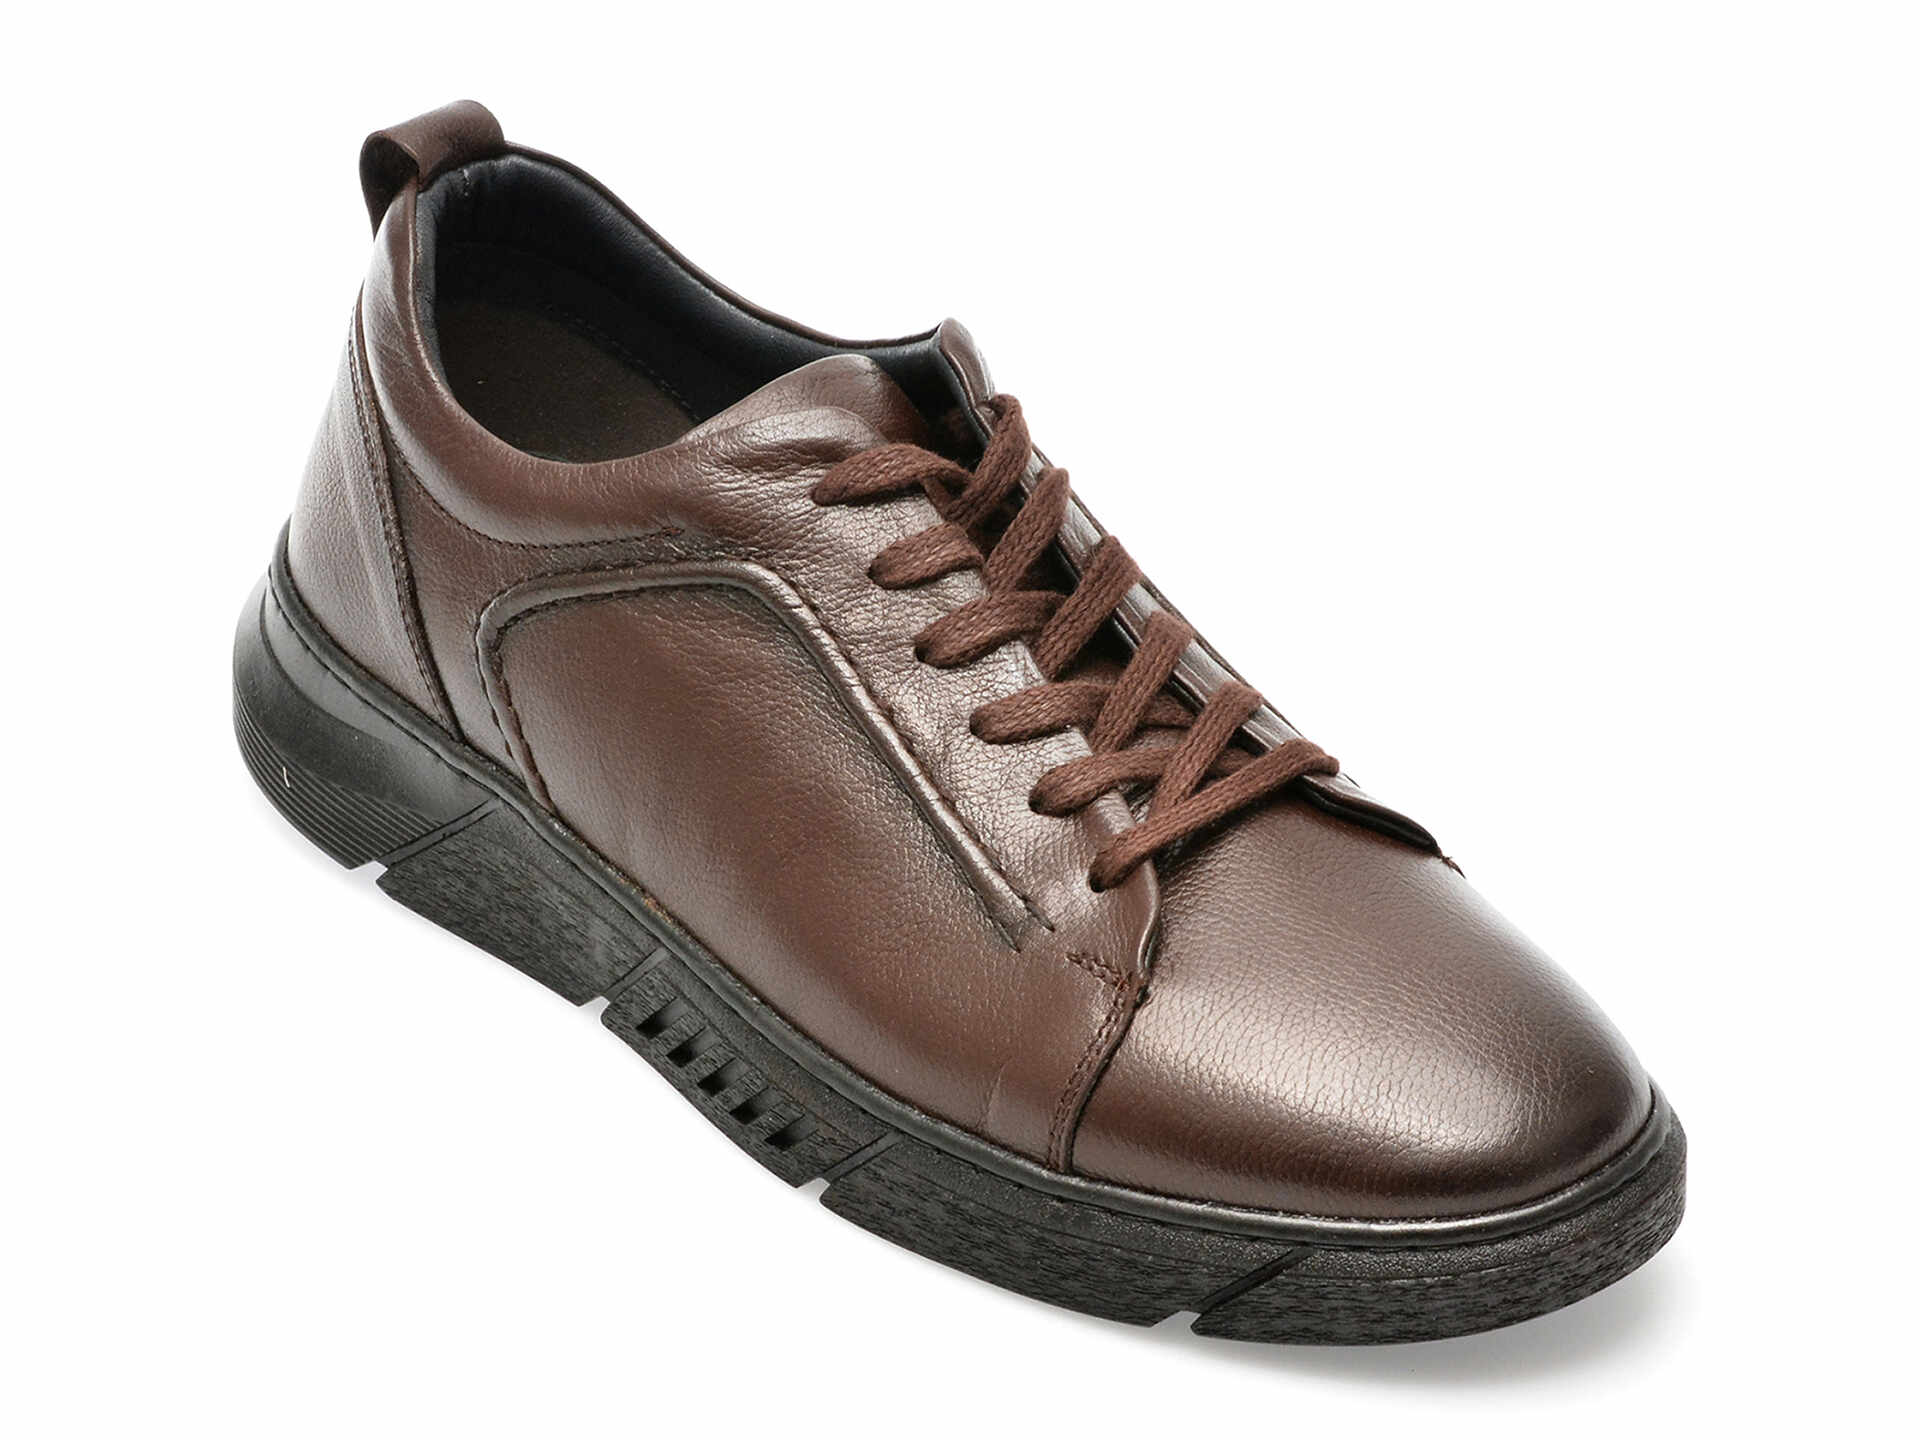 Pantofi AXXELLL maro, ER801, din piele naturala